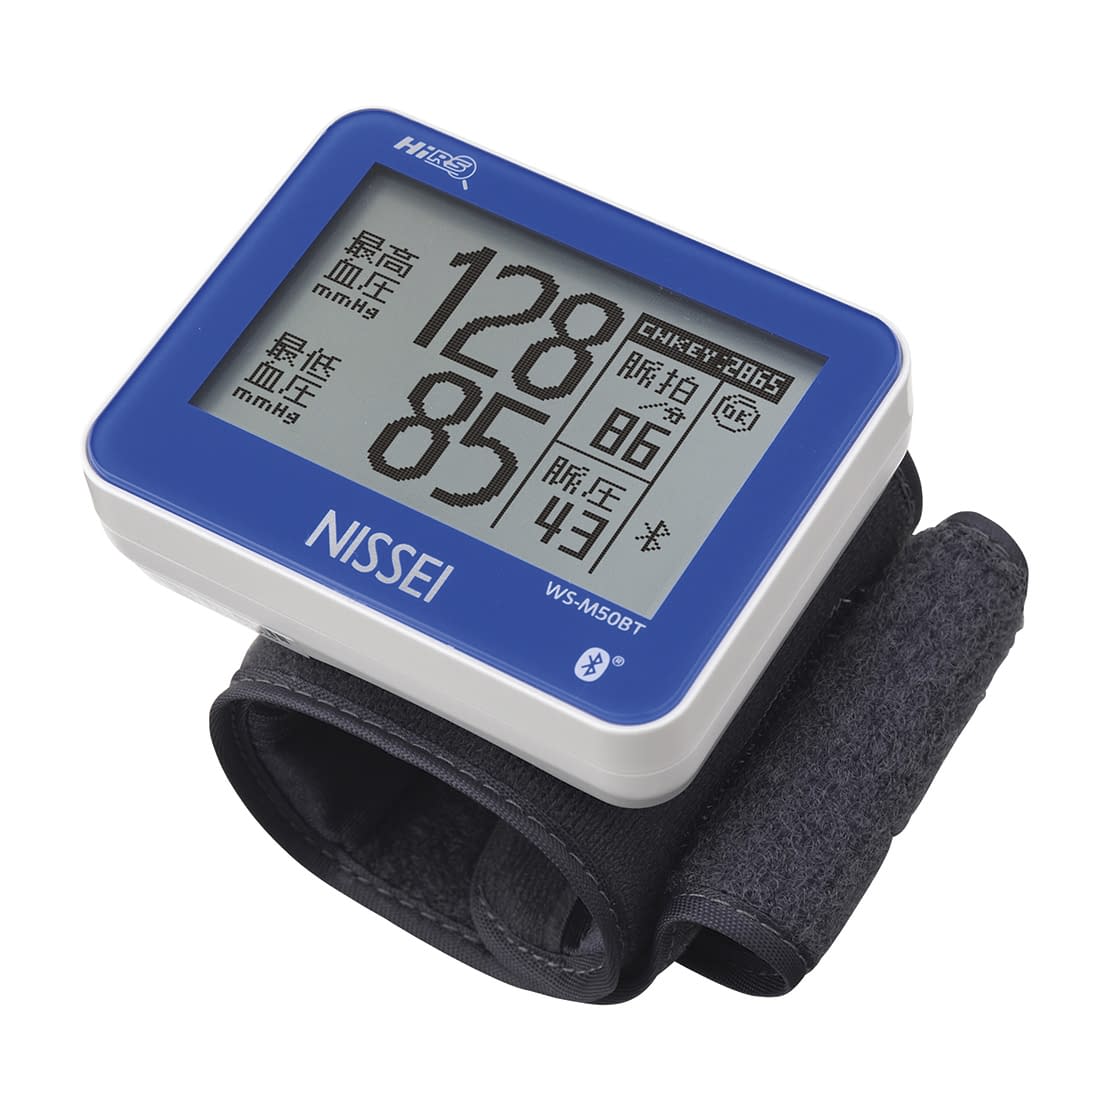 手首式デジタル血圧計 WS-M50BT  25-3010-00【日本精密測器】(WS-M50BT)(25-3010-00)